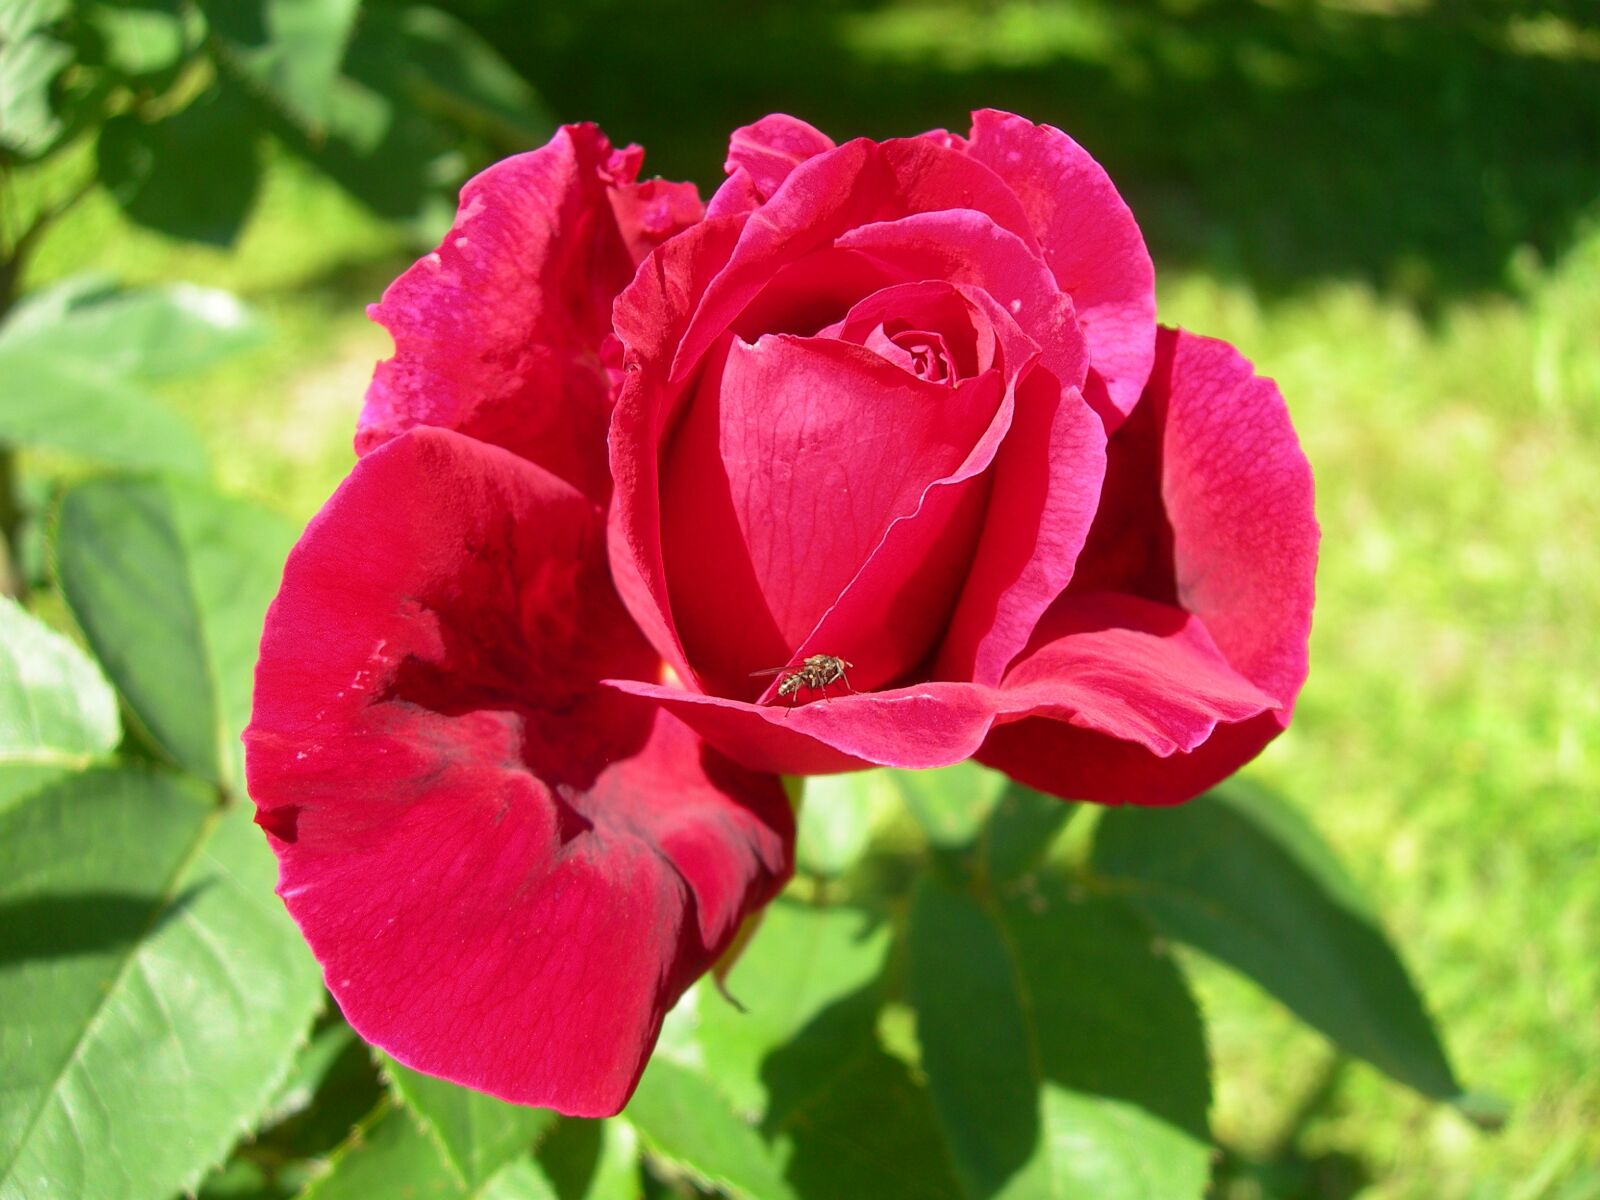 Nikon E7600 sample photo. Red rose, rose garden photography